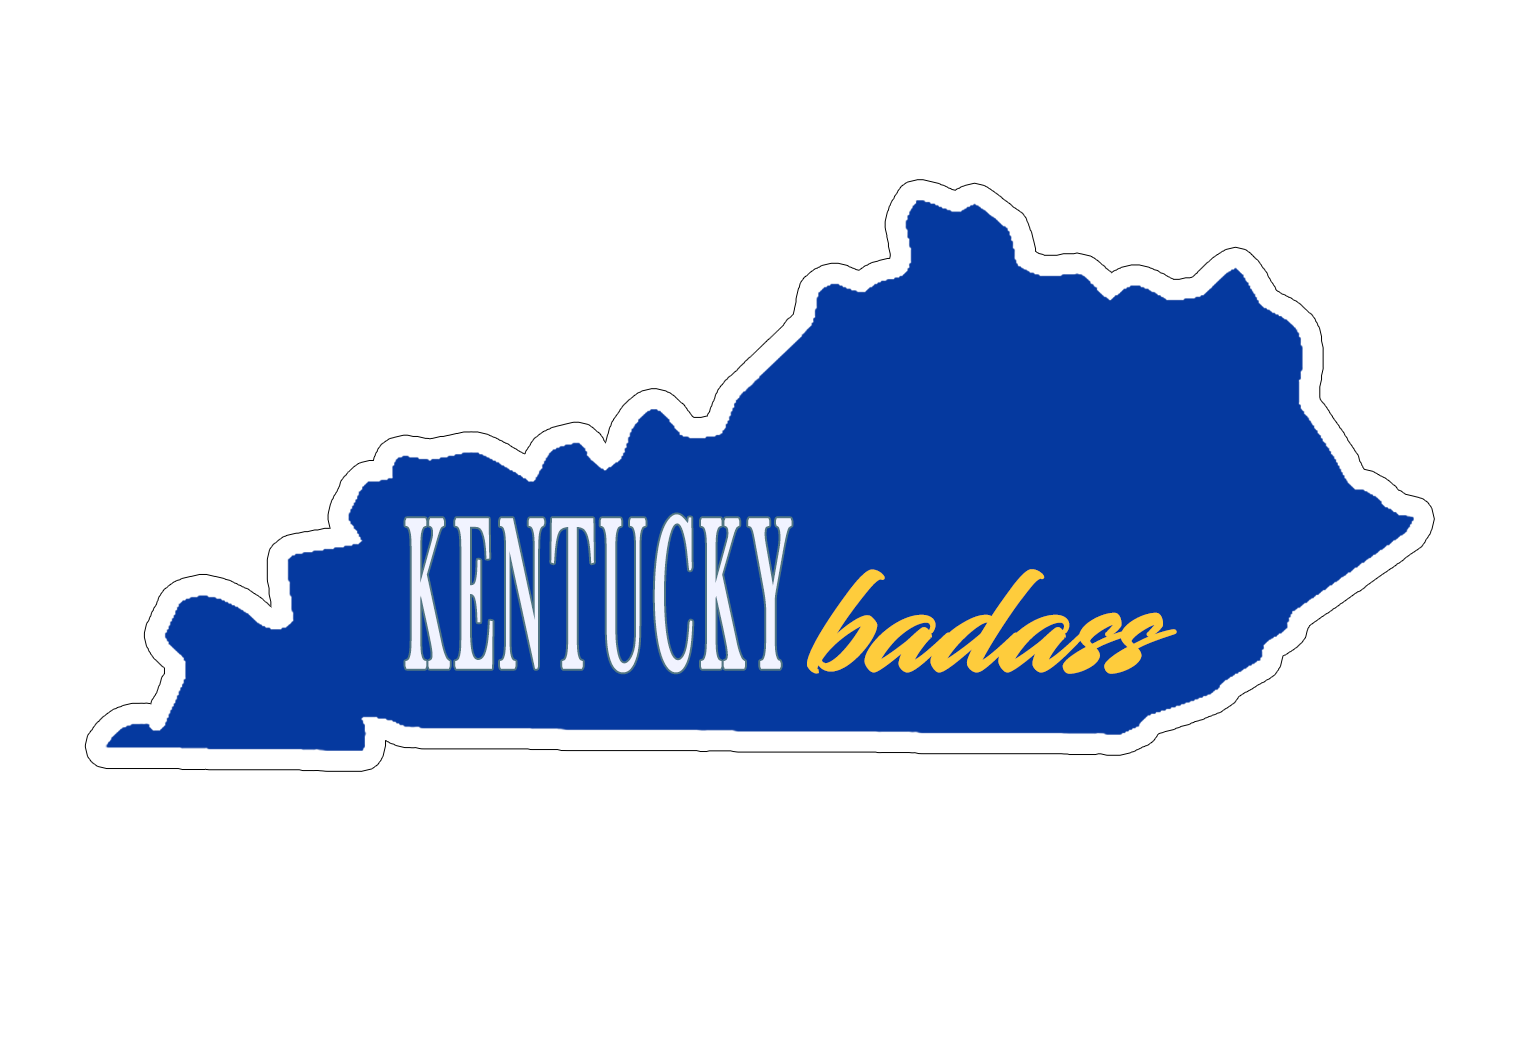 Kentucky Badass Blue and White Sticker